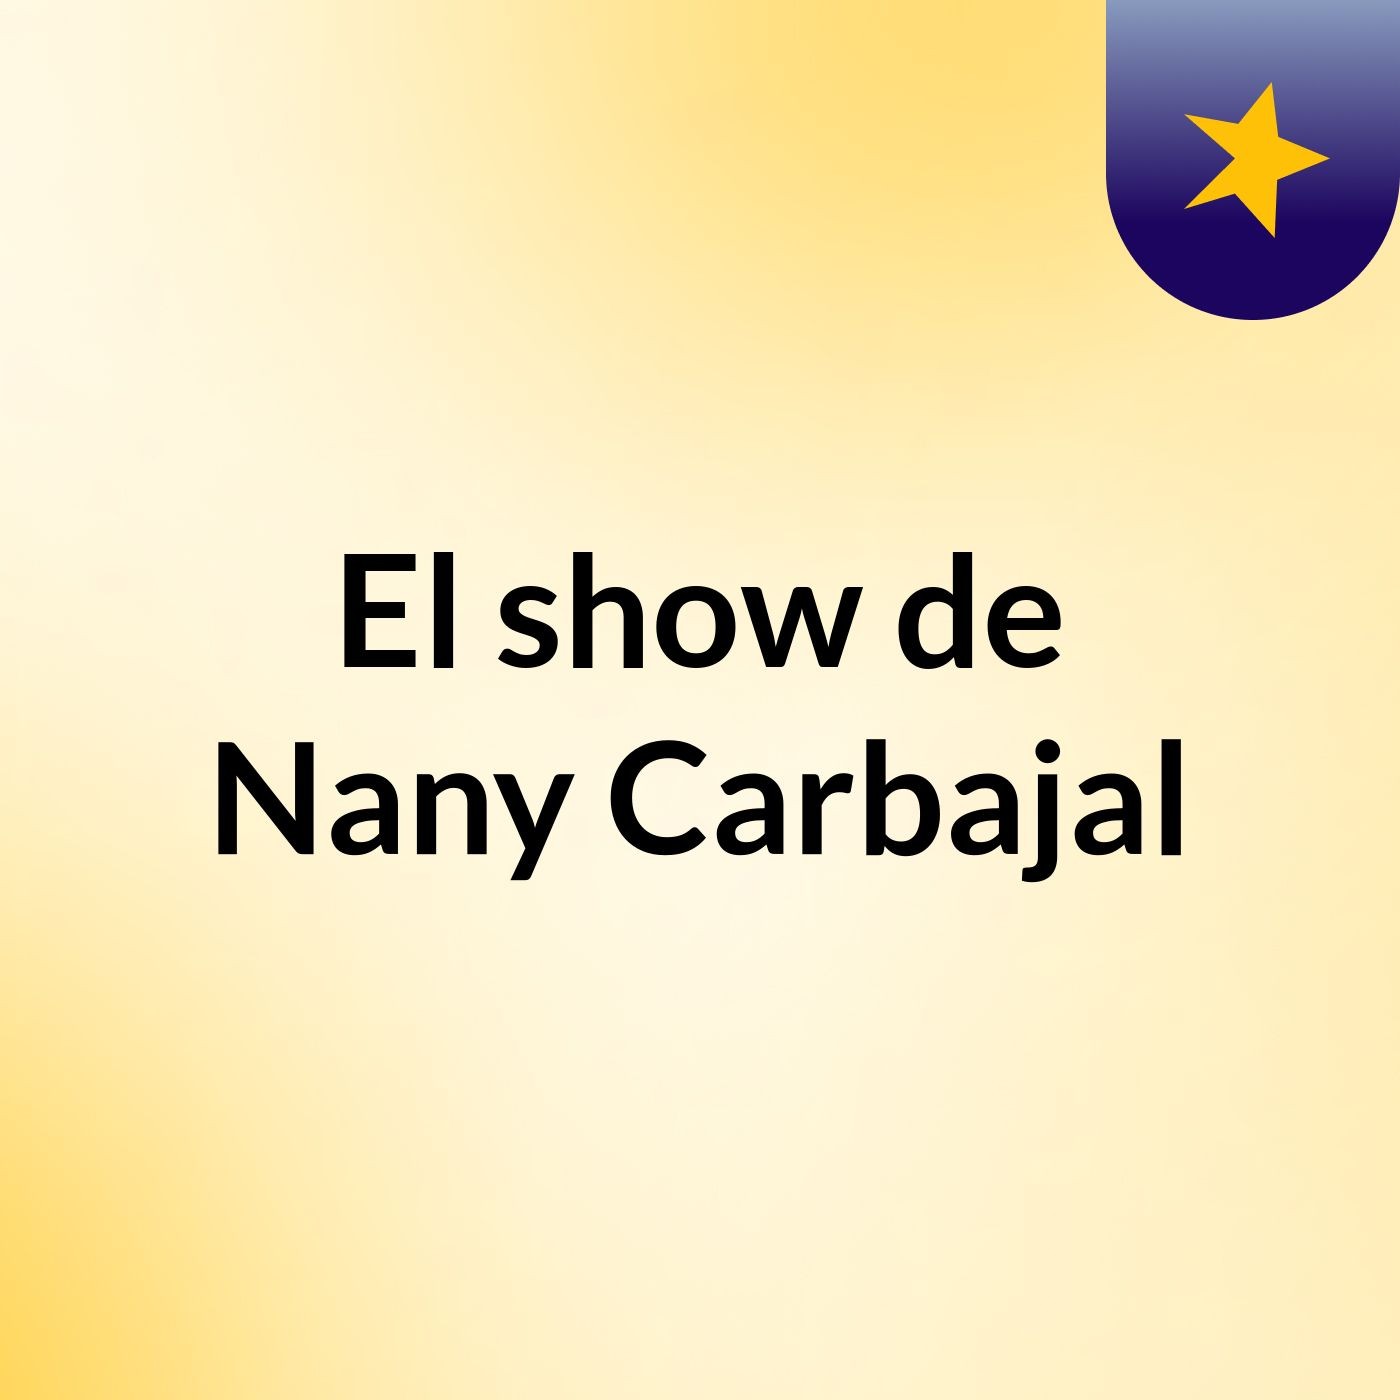 El show de Nany Carbajal